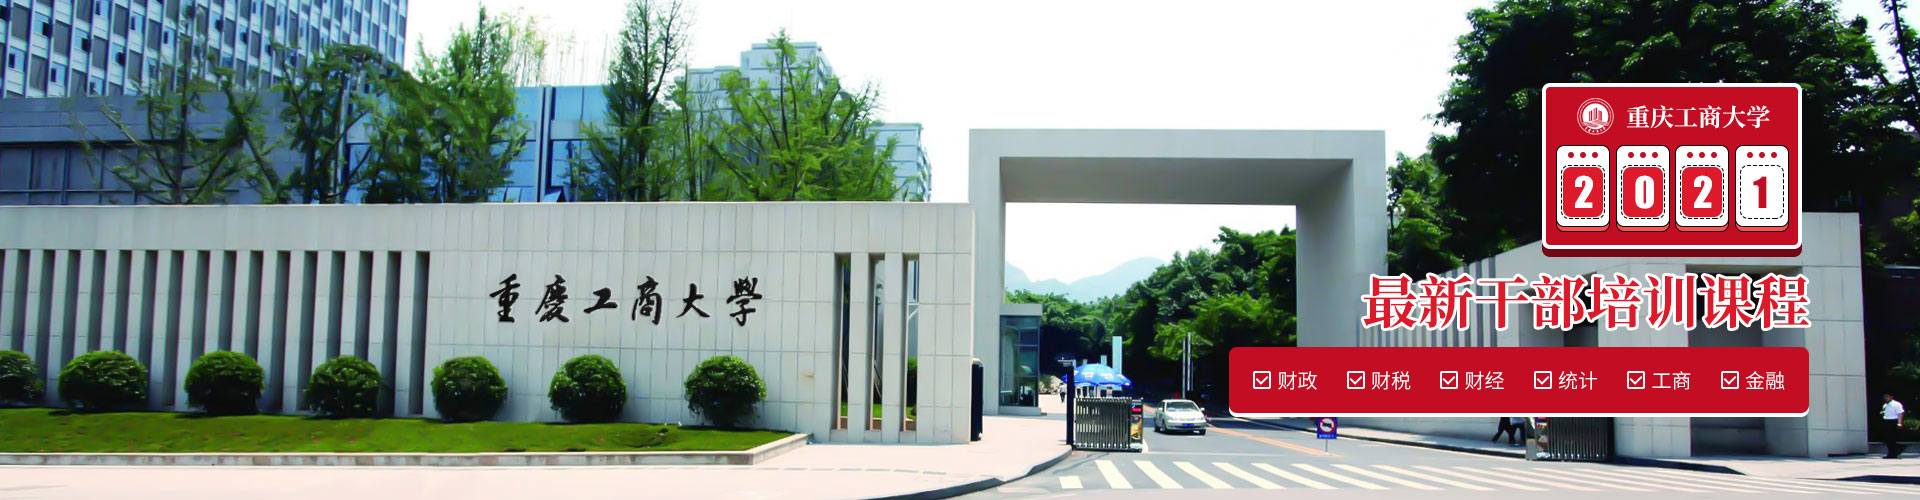 重庆工商大学干部培训中心